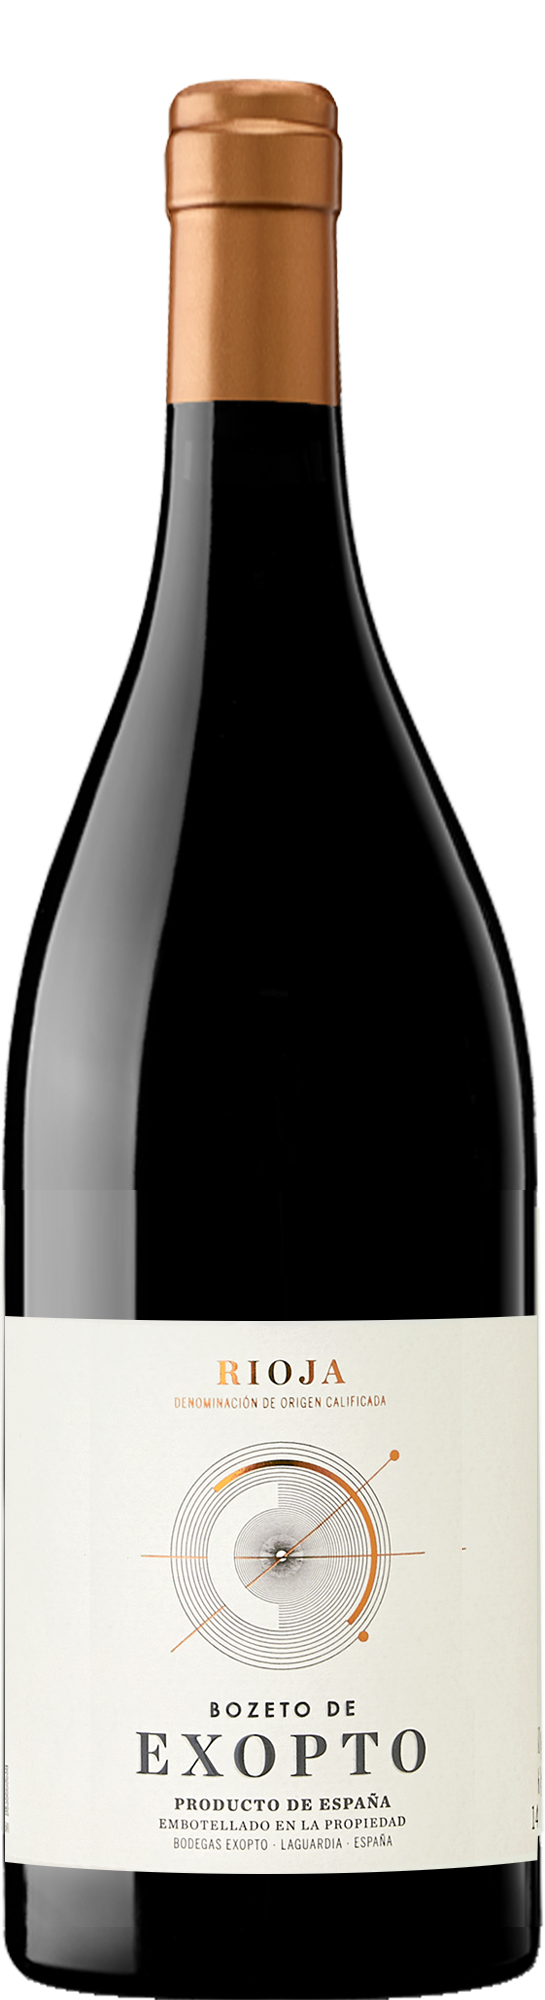 Bodegas Exopto Rioja Bozeto de Exopto 2020 (1500ml)